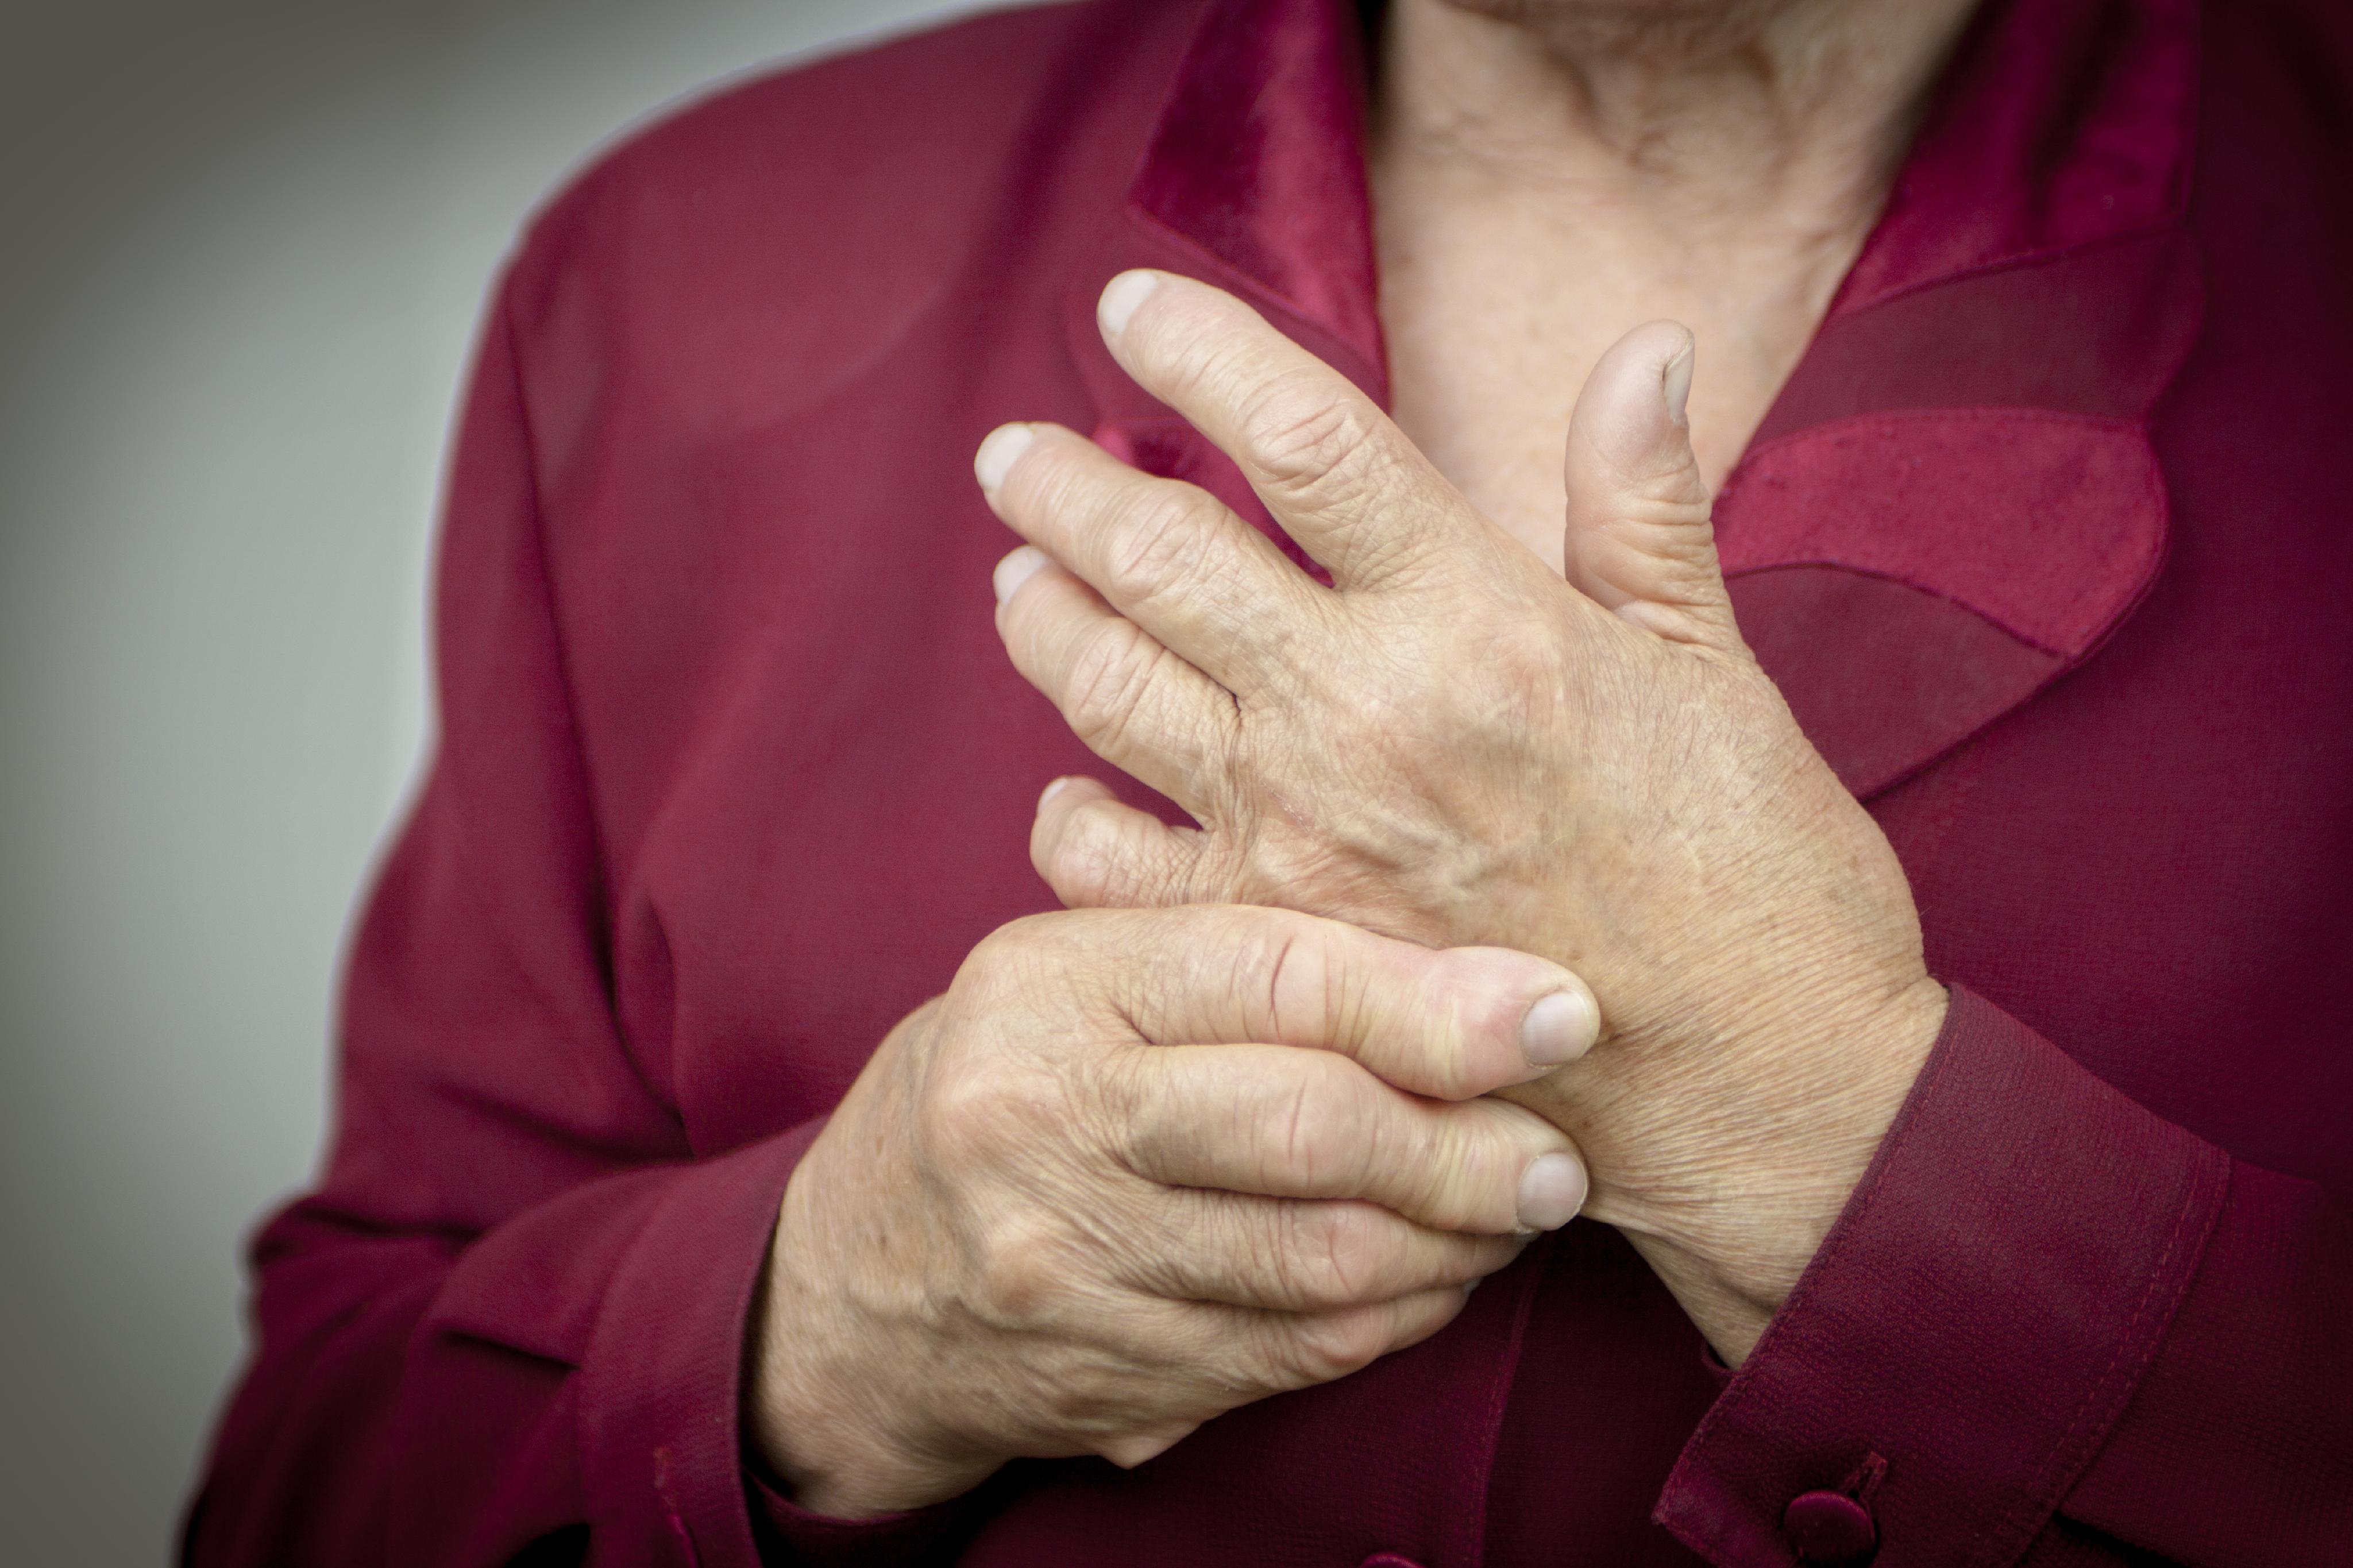 La artrosis sintomática de mano se asocia a mayor riesgo de infarto -  Sociedad Asturiana de Reumatología